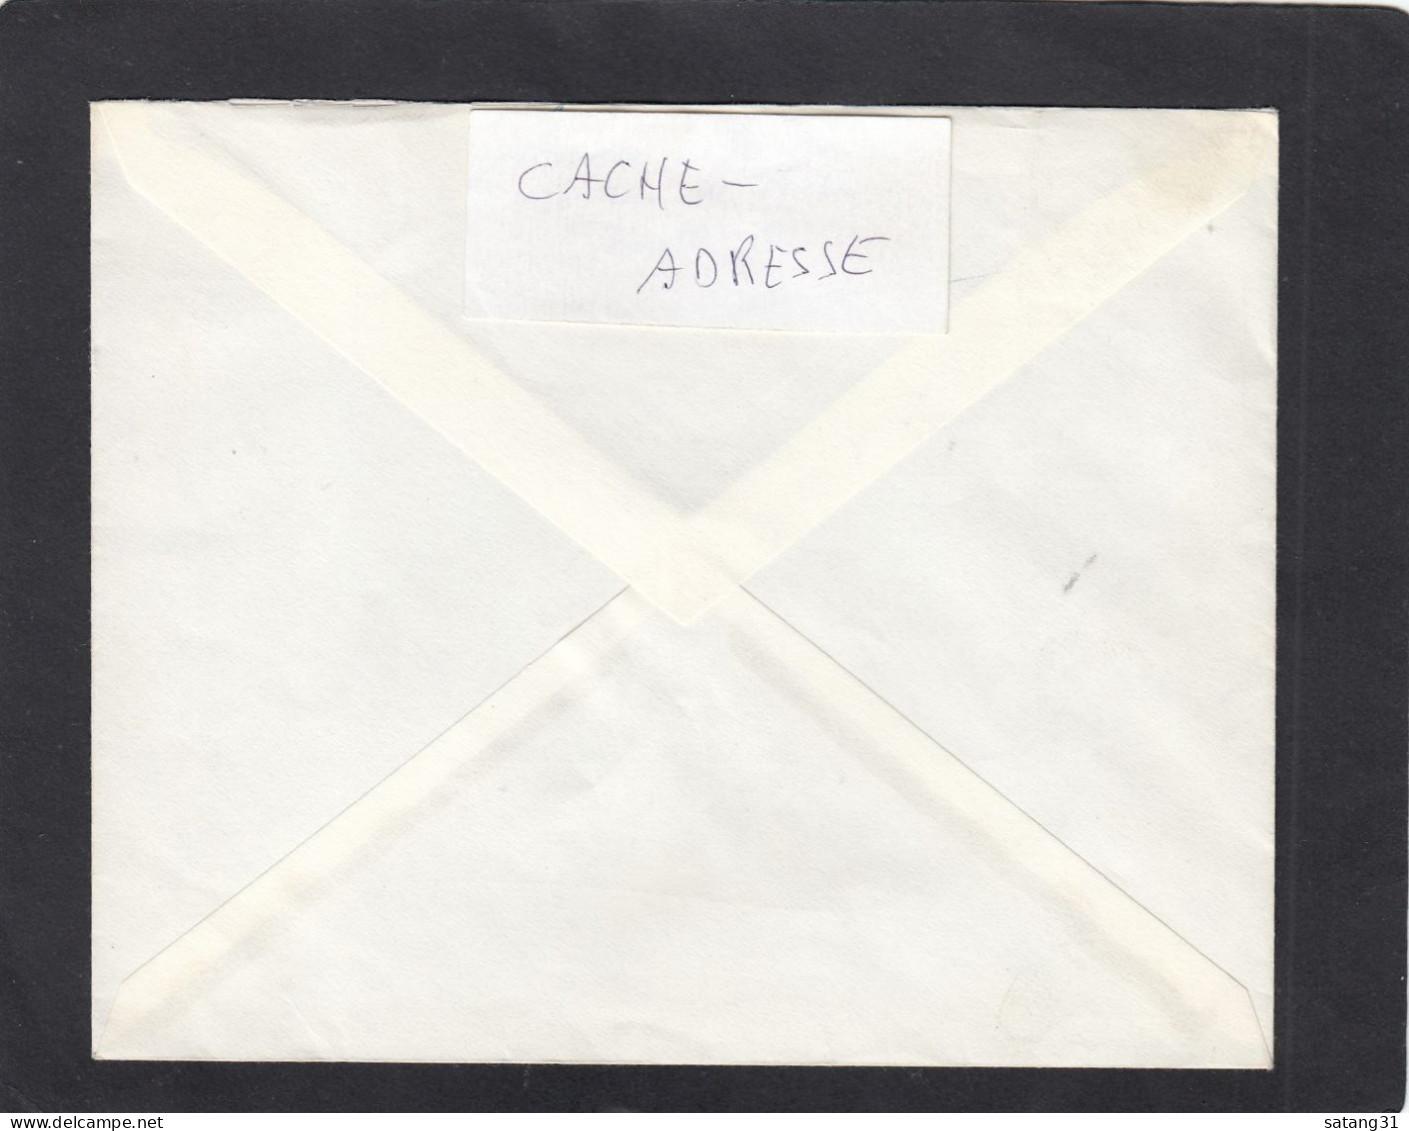 LETTRE DE 22 GRS. PAR EXPRESS DE HAREN POUR BRUXELLES,1963. - Briefe U. Dokumente